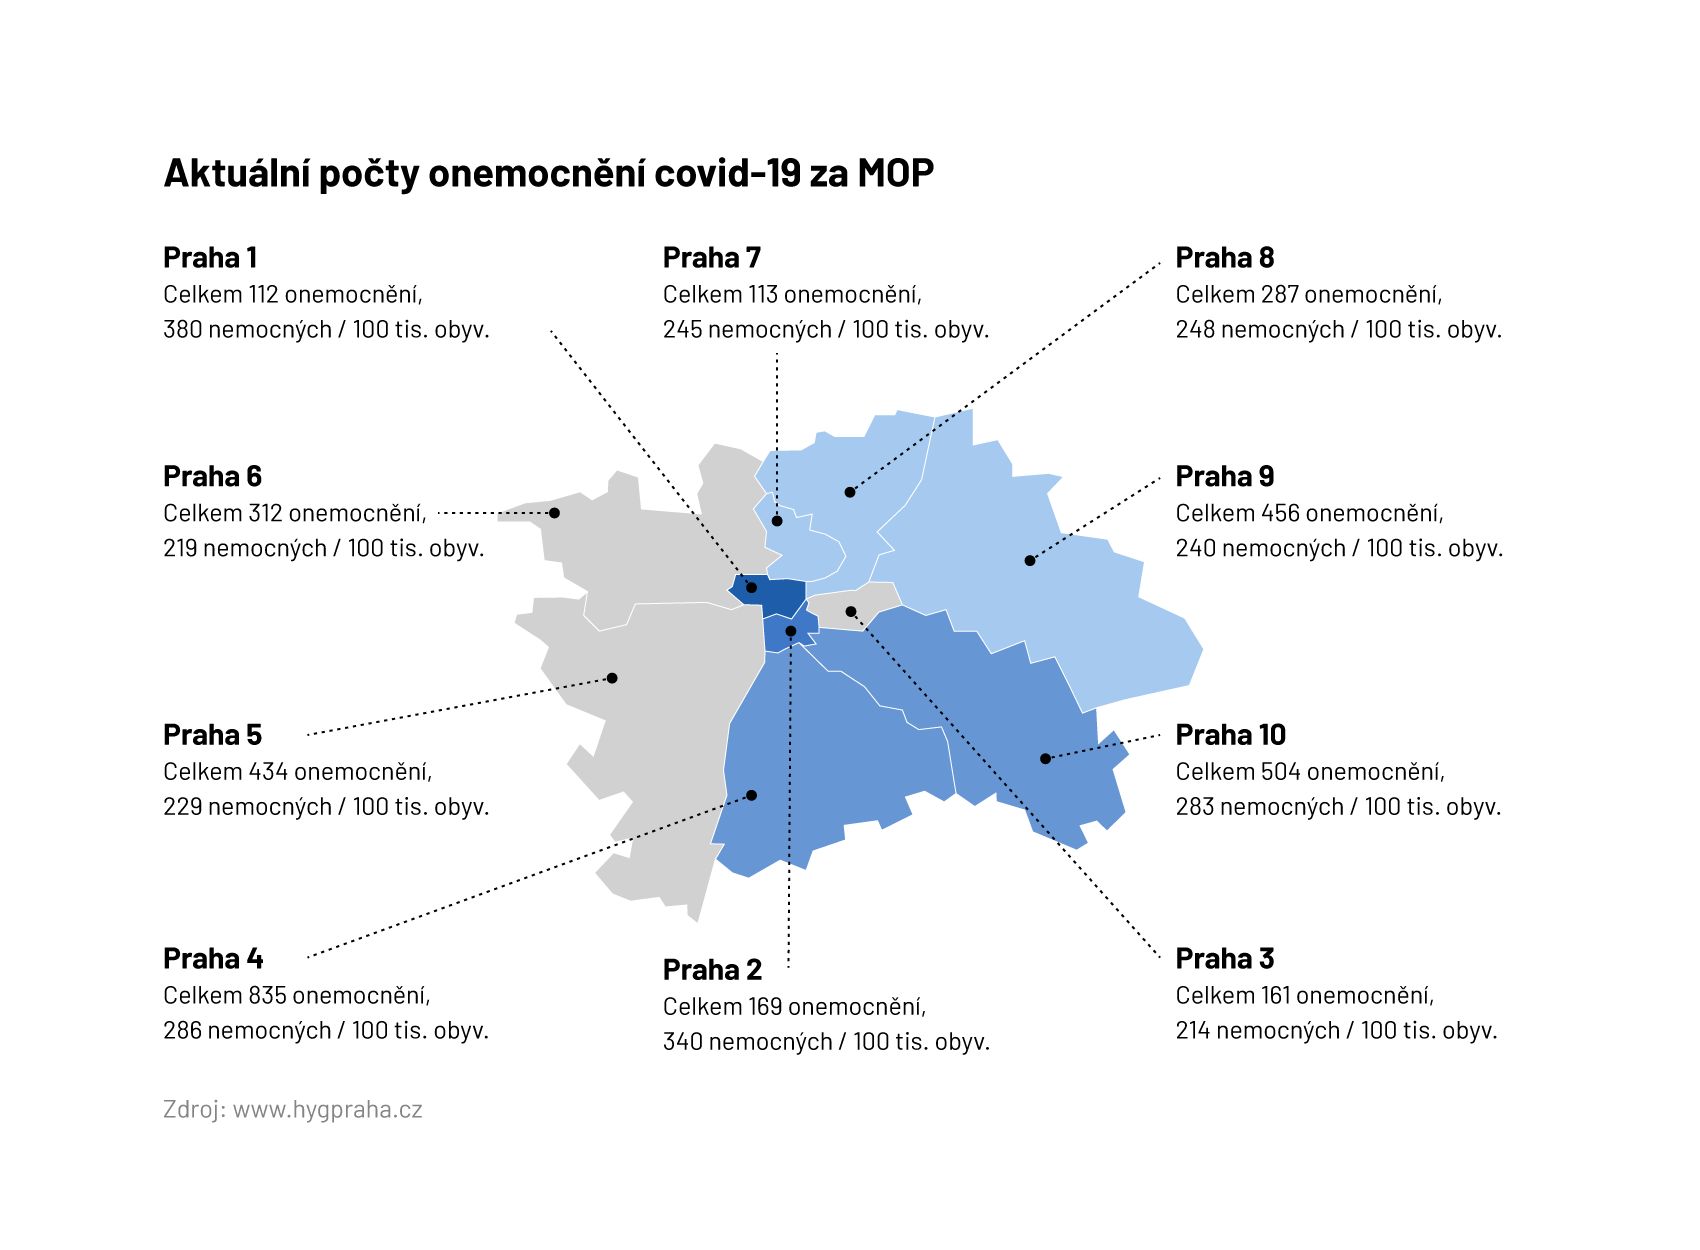 Aktuální počty onemocnění covid-19 v pražských obvodech (6. 8. 2020)